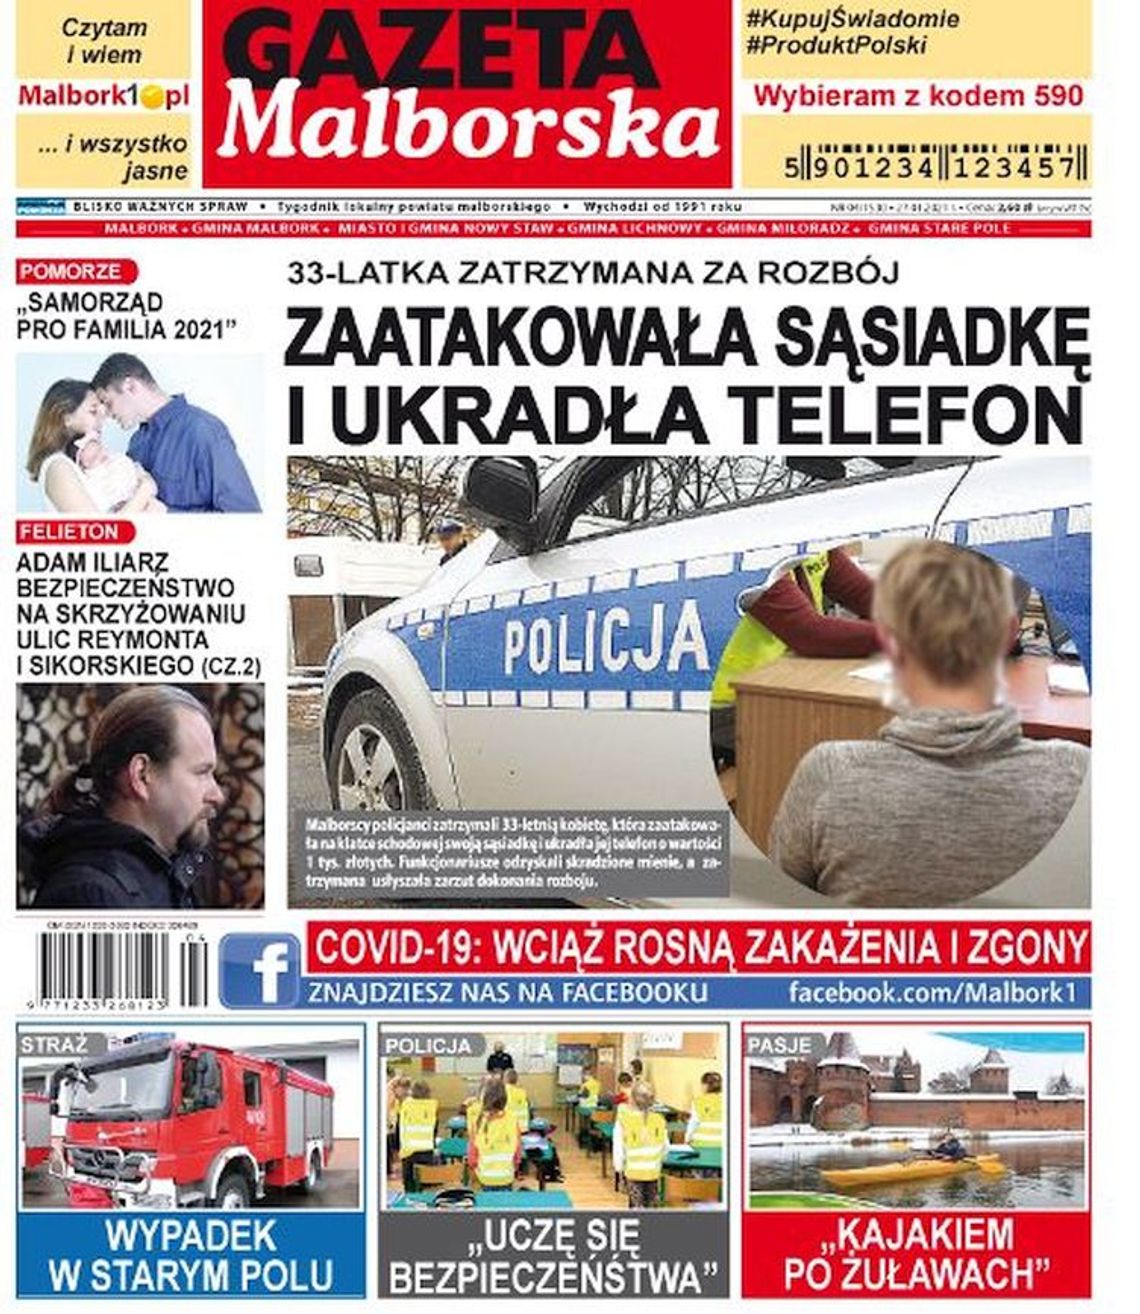 Nowy numer Gazety Malborskiej już w sprzedaży. Najświeższe wiadomości  z Malborka i gmin naszego powiatu są dostępne w Twoim kiosku. O czym piszemy w tym tygodniu?